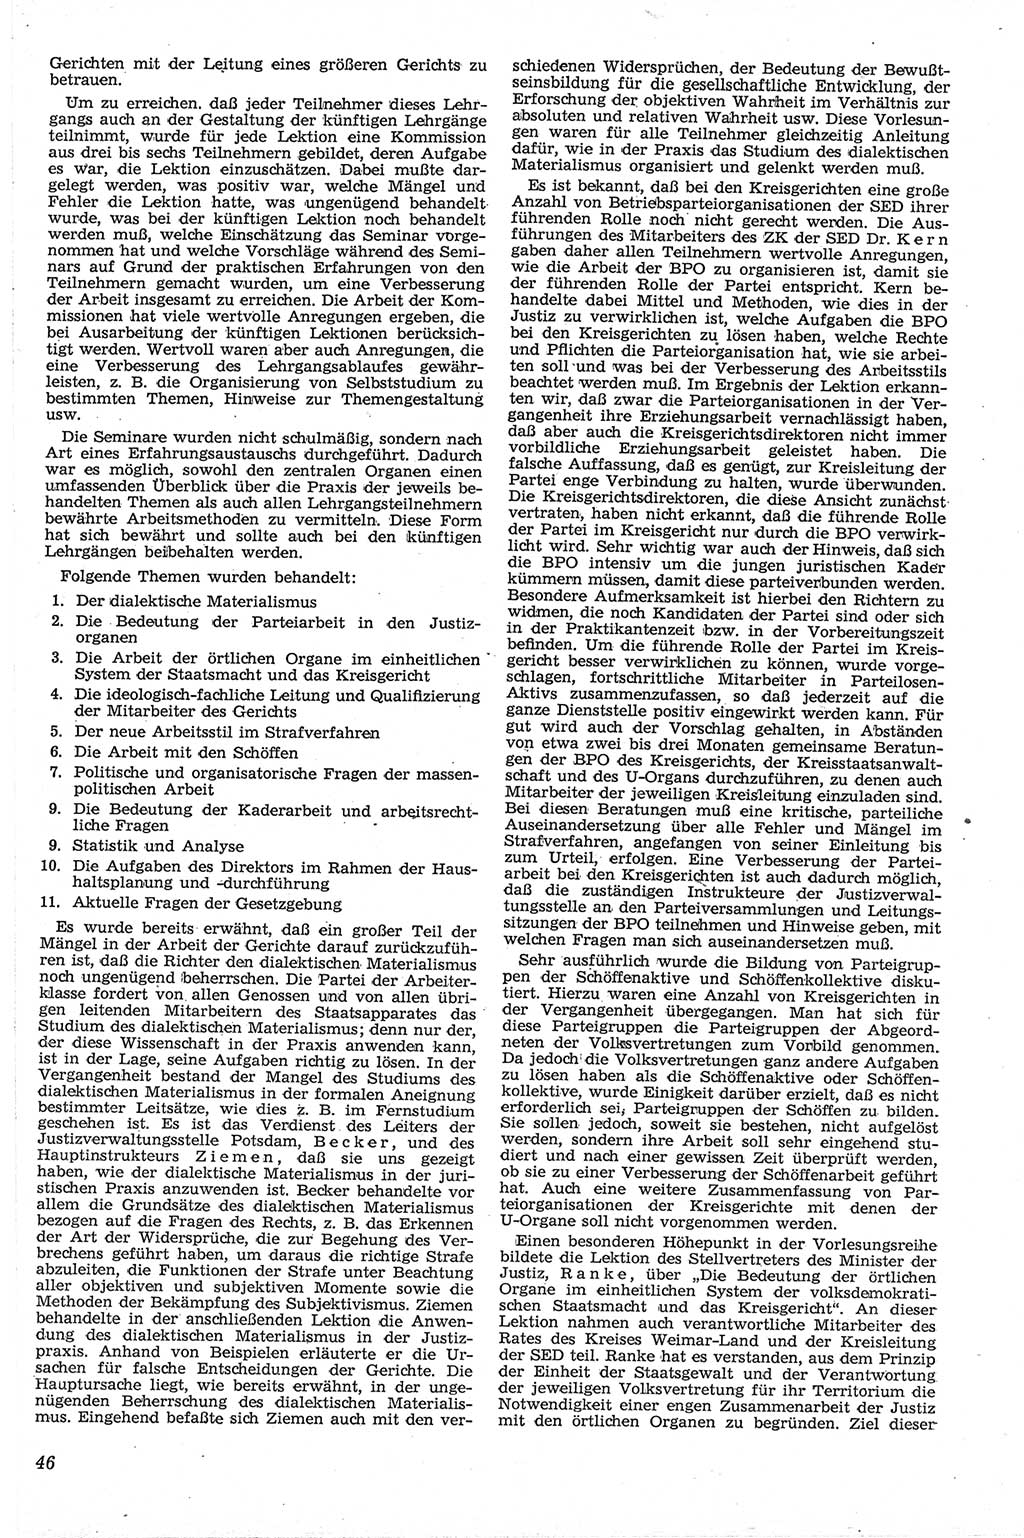 Neue Justiz (NJ), Zeitschrift für Recht und Rechtswissenschaft [Deutsche Demokratische Republik (DDR)], 13. Jahrgang 1959, Seite 46 (NJ DDR 1959, S. 46)